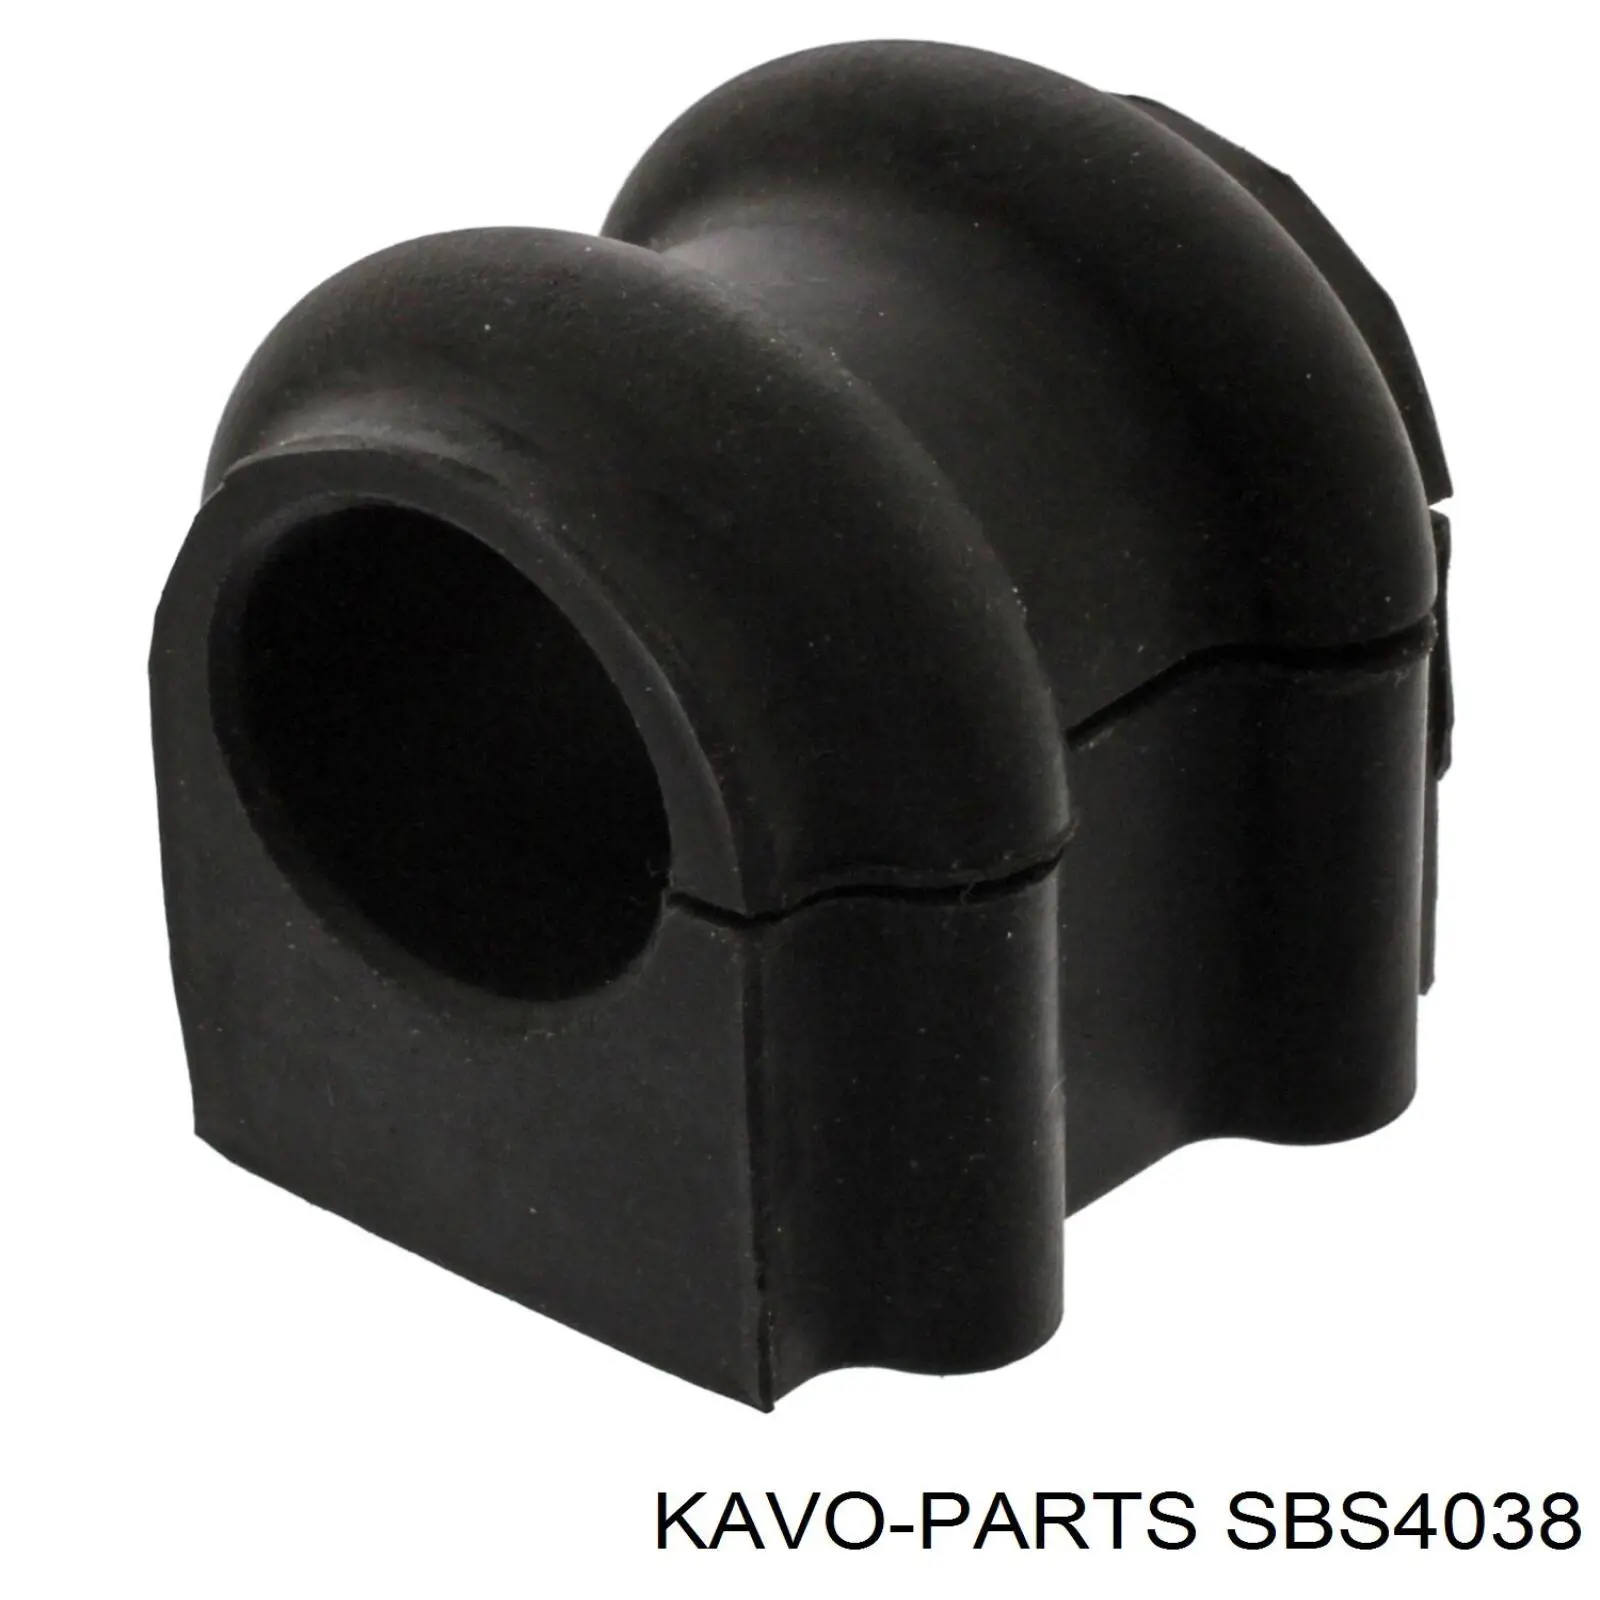 SBS-4038 Kavo Parts casquillo de barra estabilizadora delantera